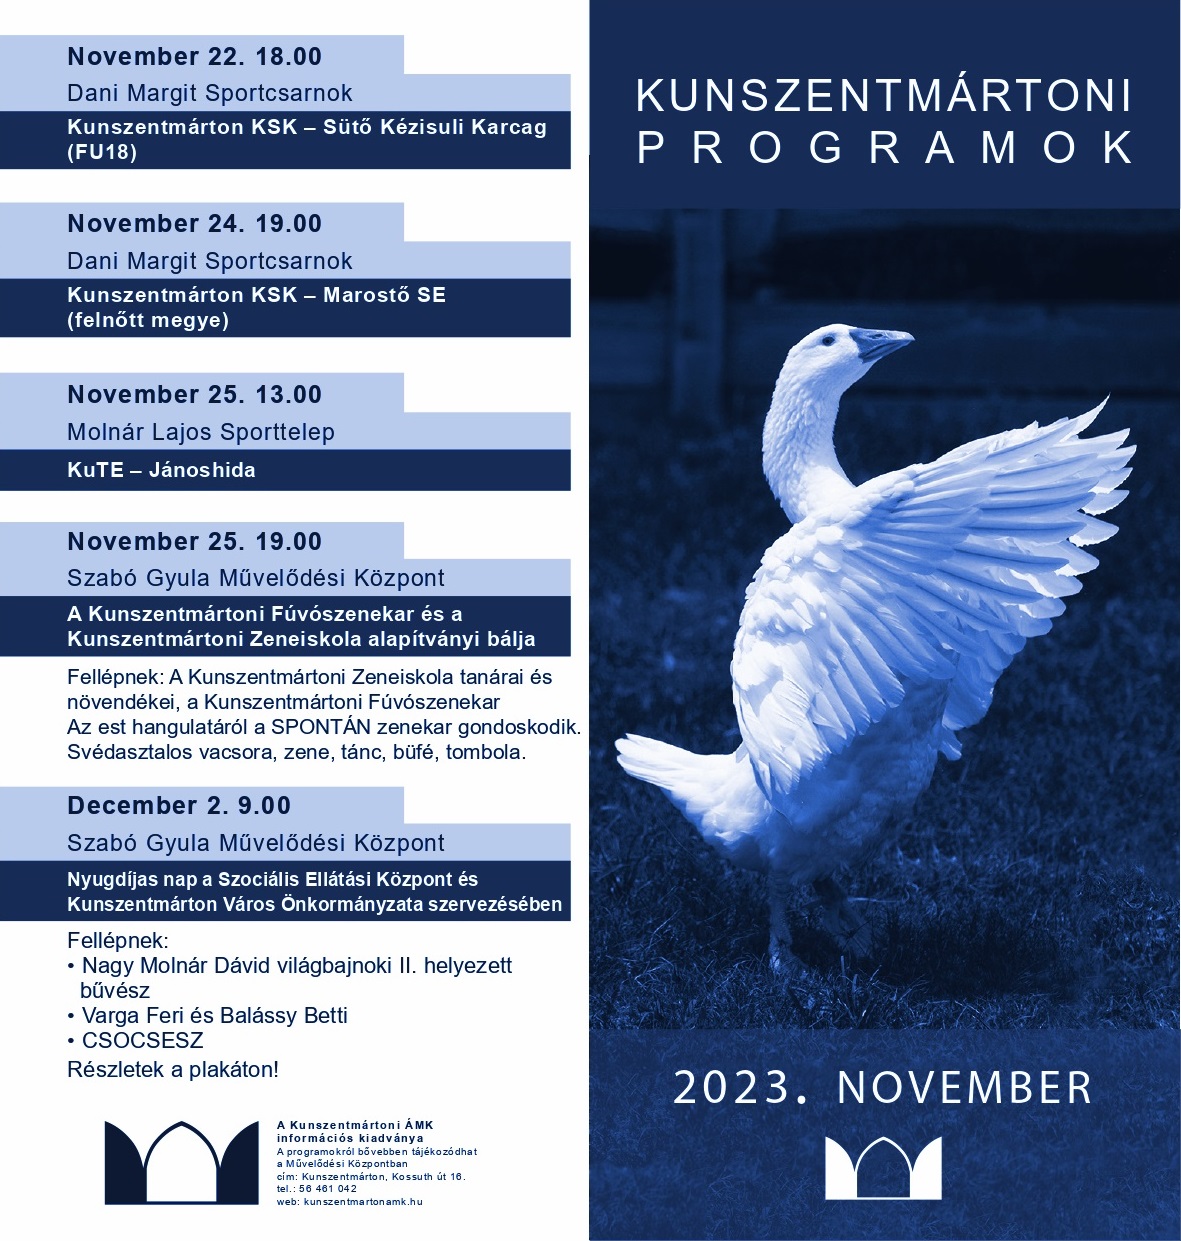 Kunszentmártoni Programok 2023. november